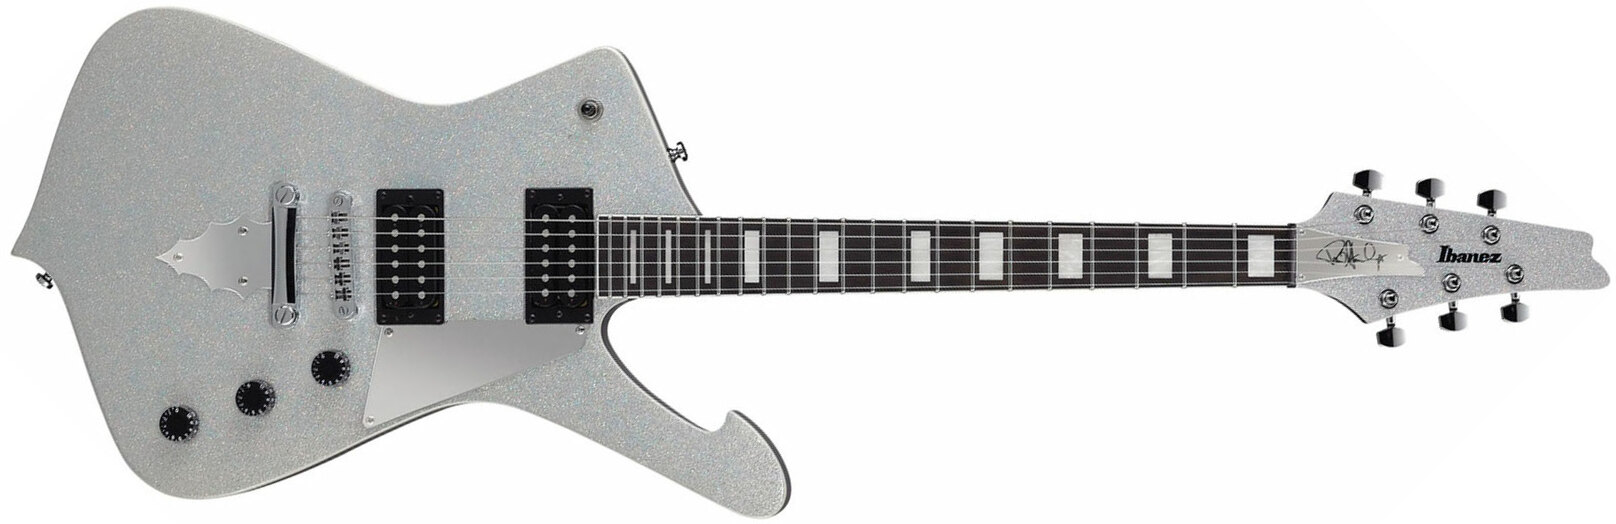 Ibanez Paul Stanley Ps60 Ssl Signature Hh Ht Pur - Silver Sparkle - Guitare Électrique MÉtal - Main picture